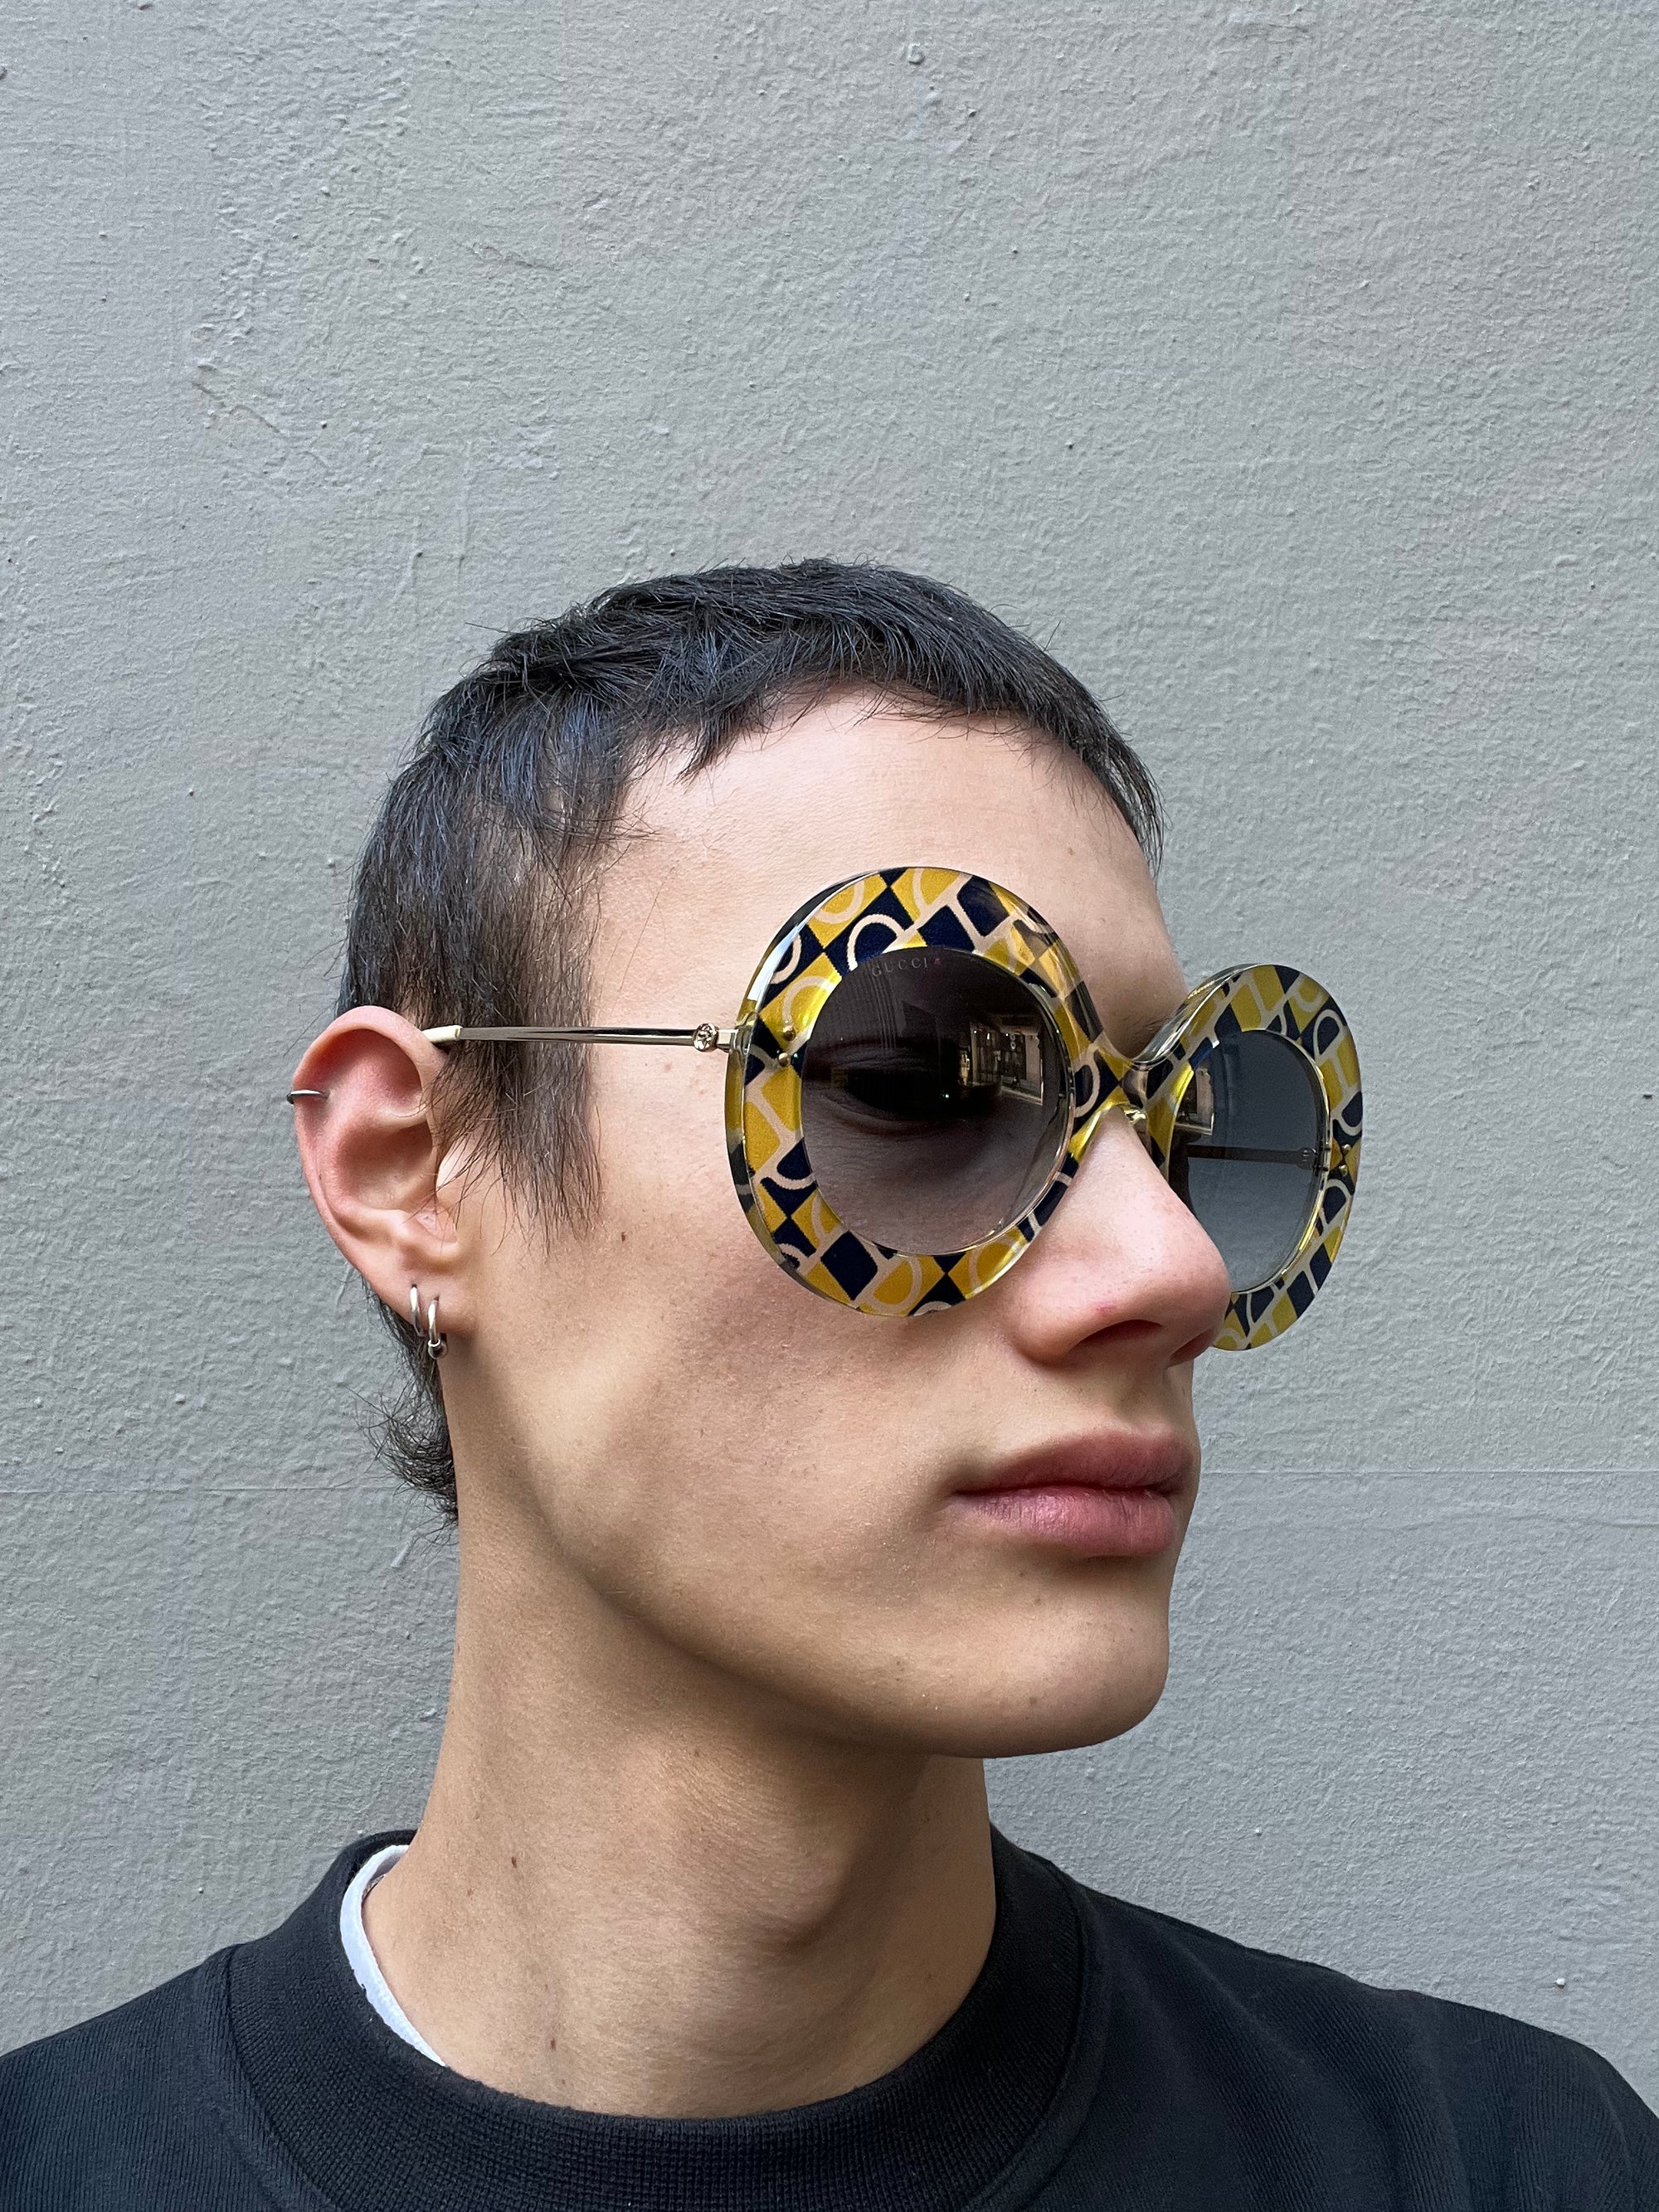 Tragebild der Gucci Sunglasses von der Seite an einem Männlichem Model.